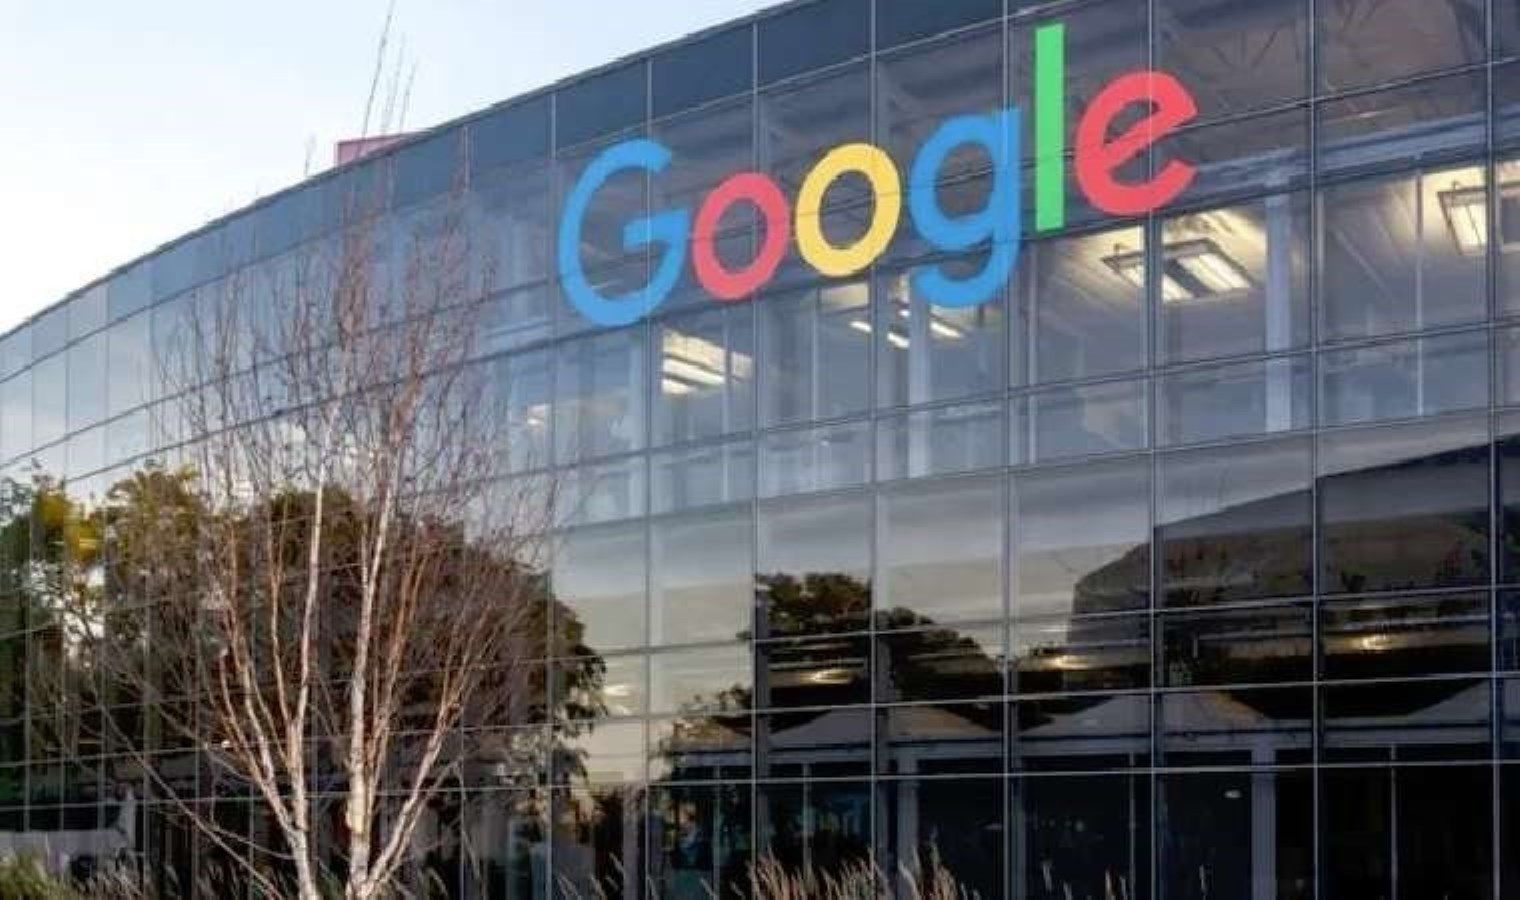 Dijital Mecralar Komisyonu Google ile görüştü: Dijital telif konusu dünyada ne durumda?